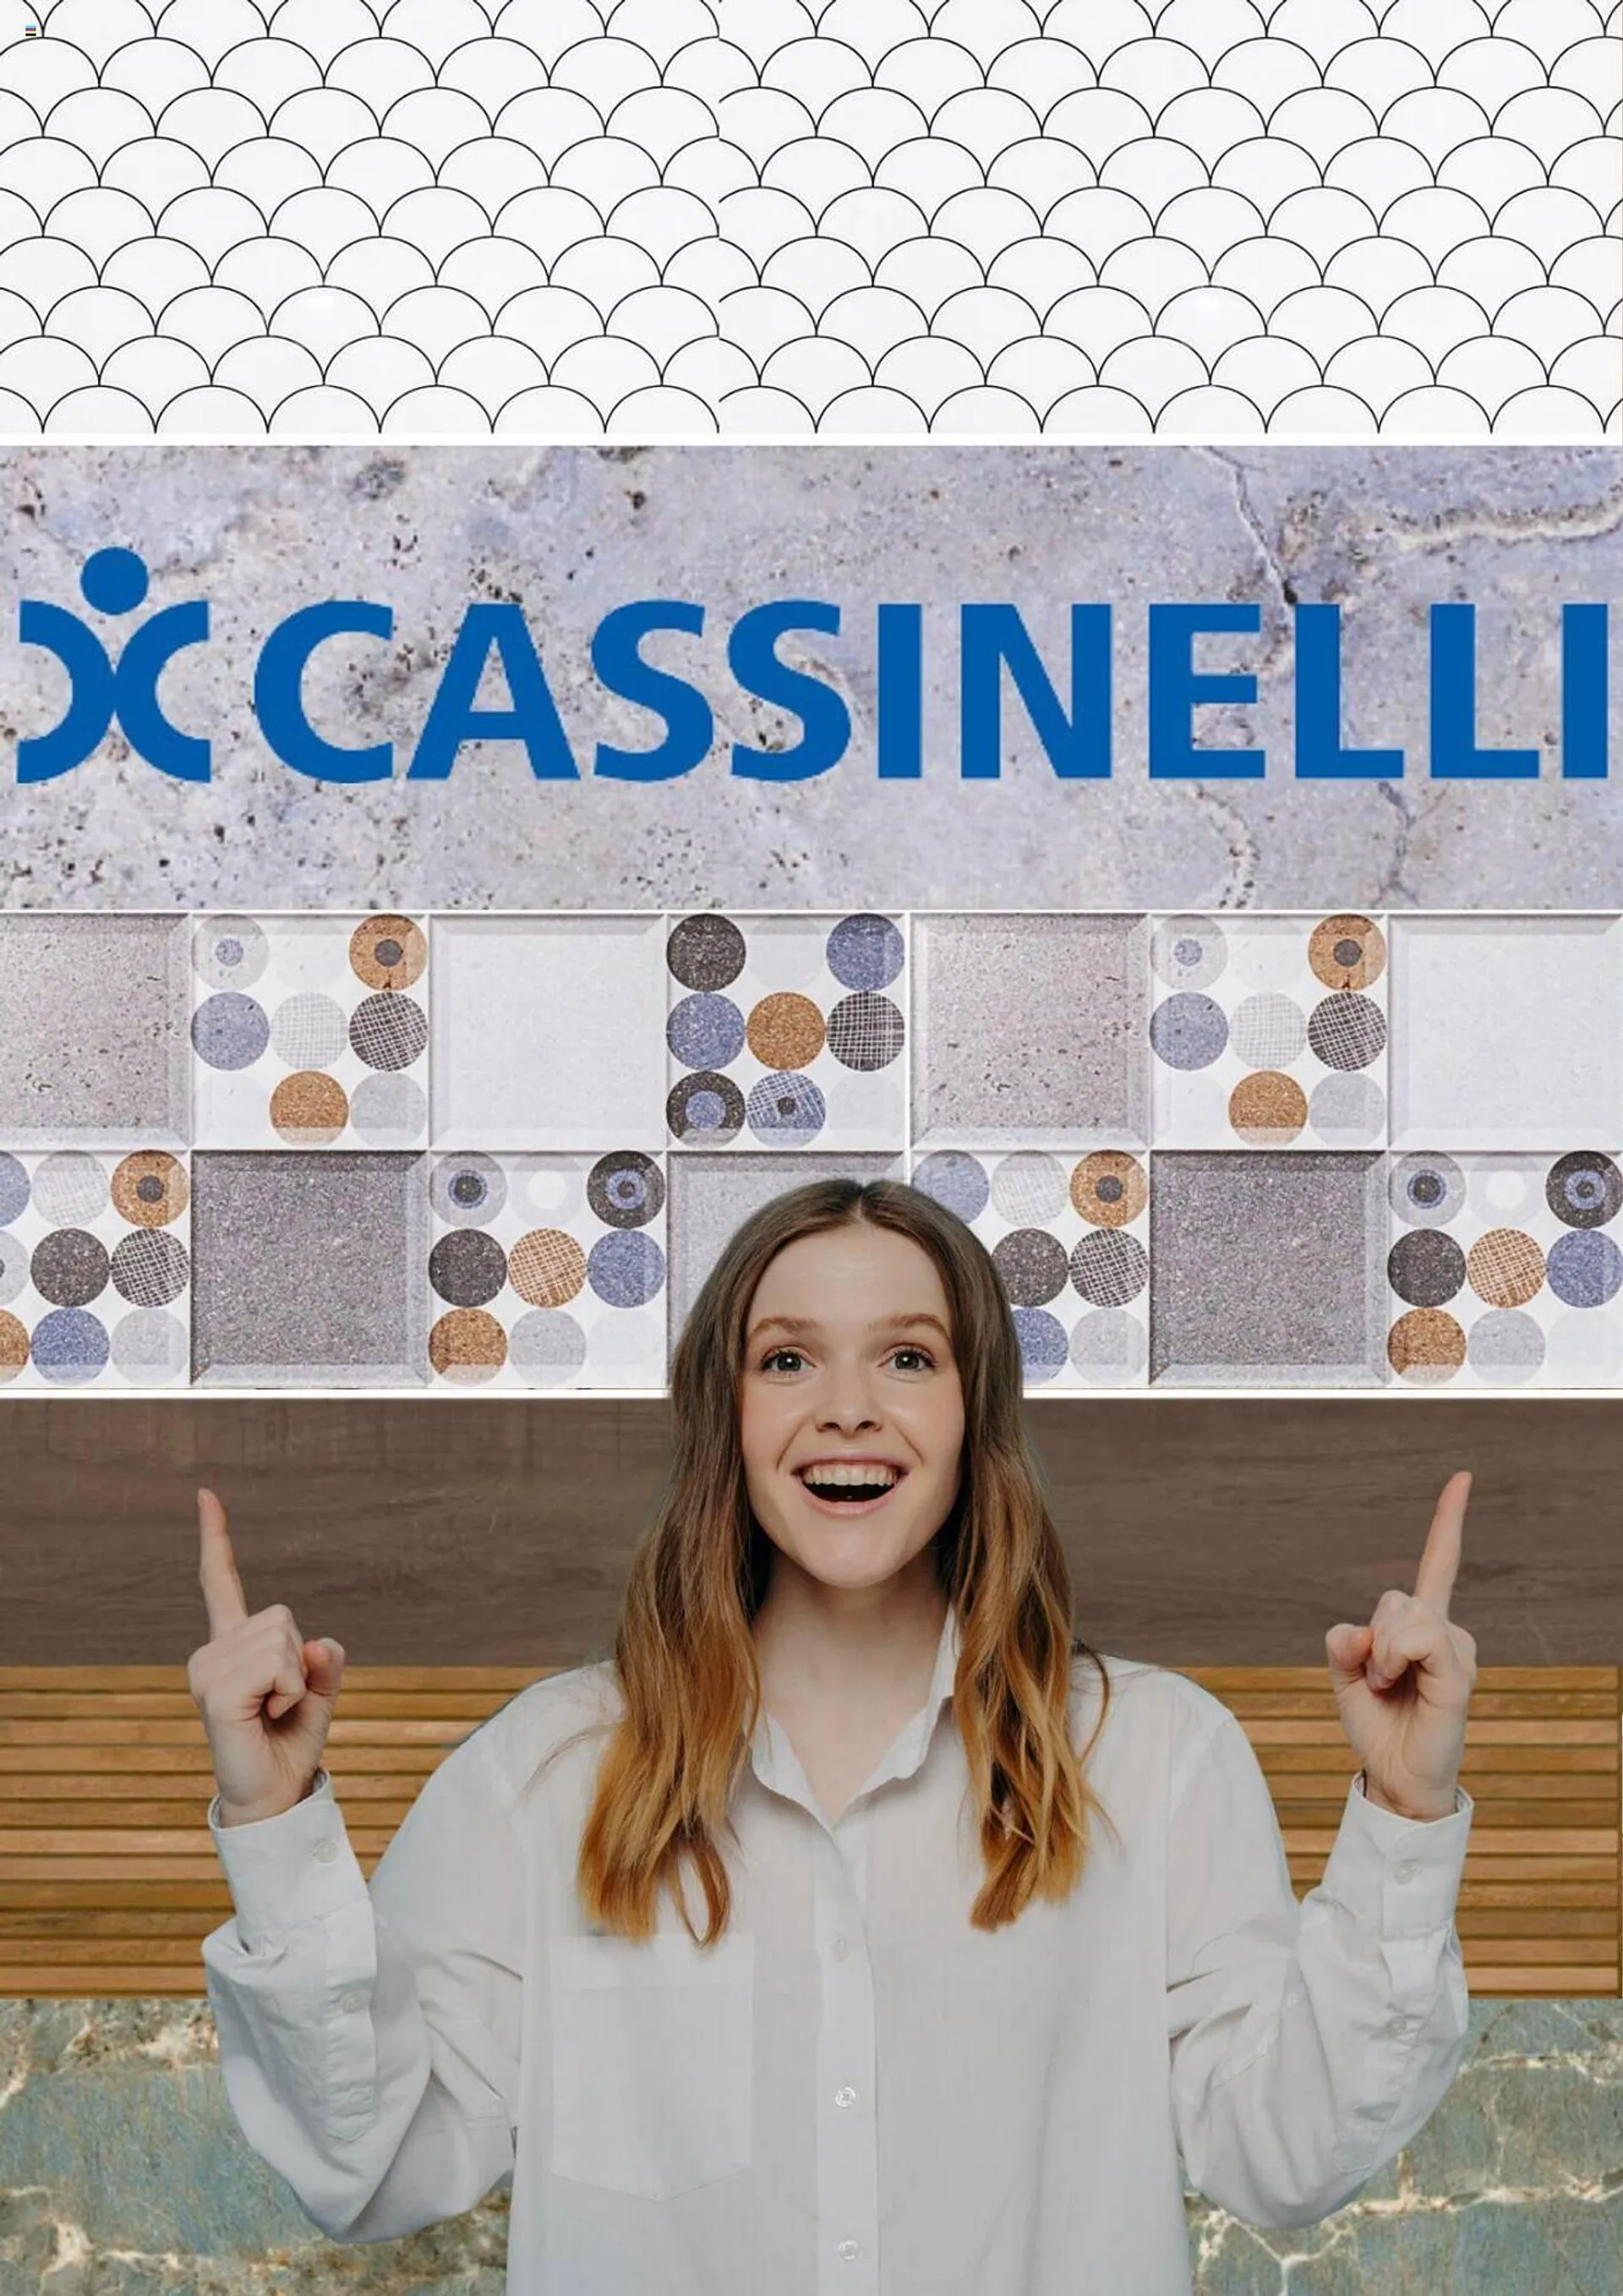 Catálogo Cassinelli - 1